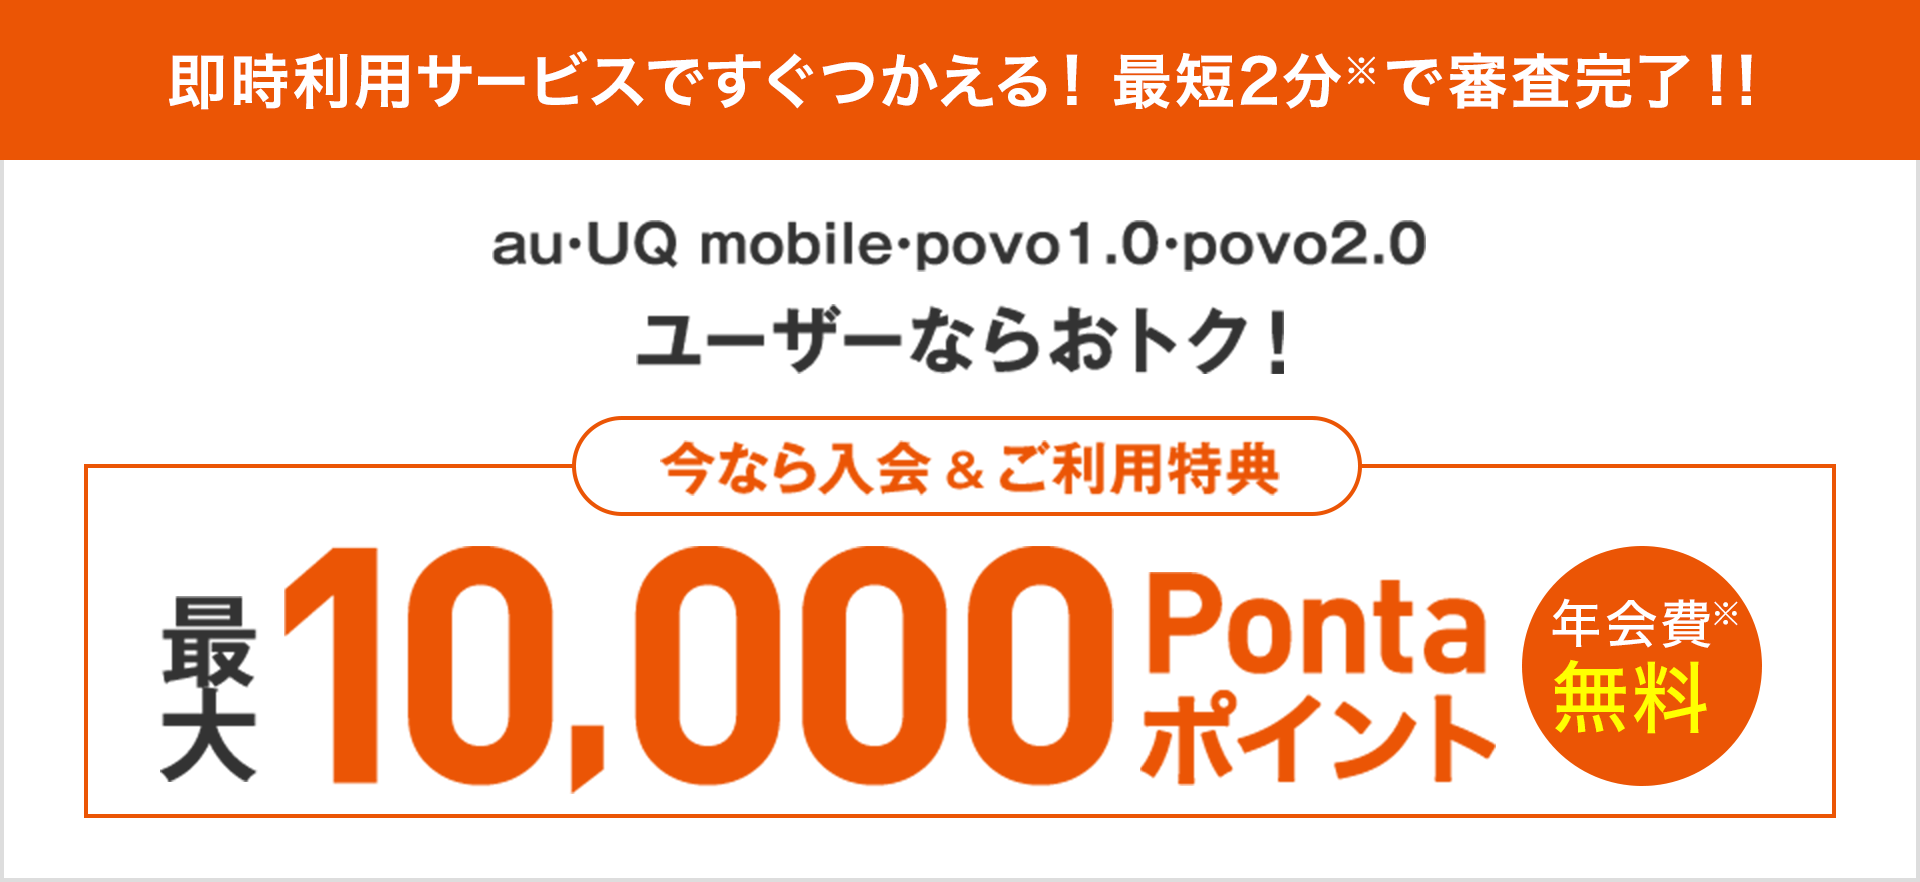 即時利用サービスですぐつかえる！最短2分※で審査完了！！ au・UQ mobile・povo1.0・povo2.0ユーザーならおトク！ 今なら入会&ご利用特典 最大10,000Pontaポイント 年会費※無料